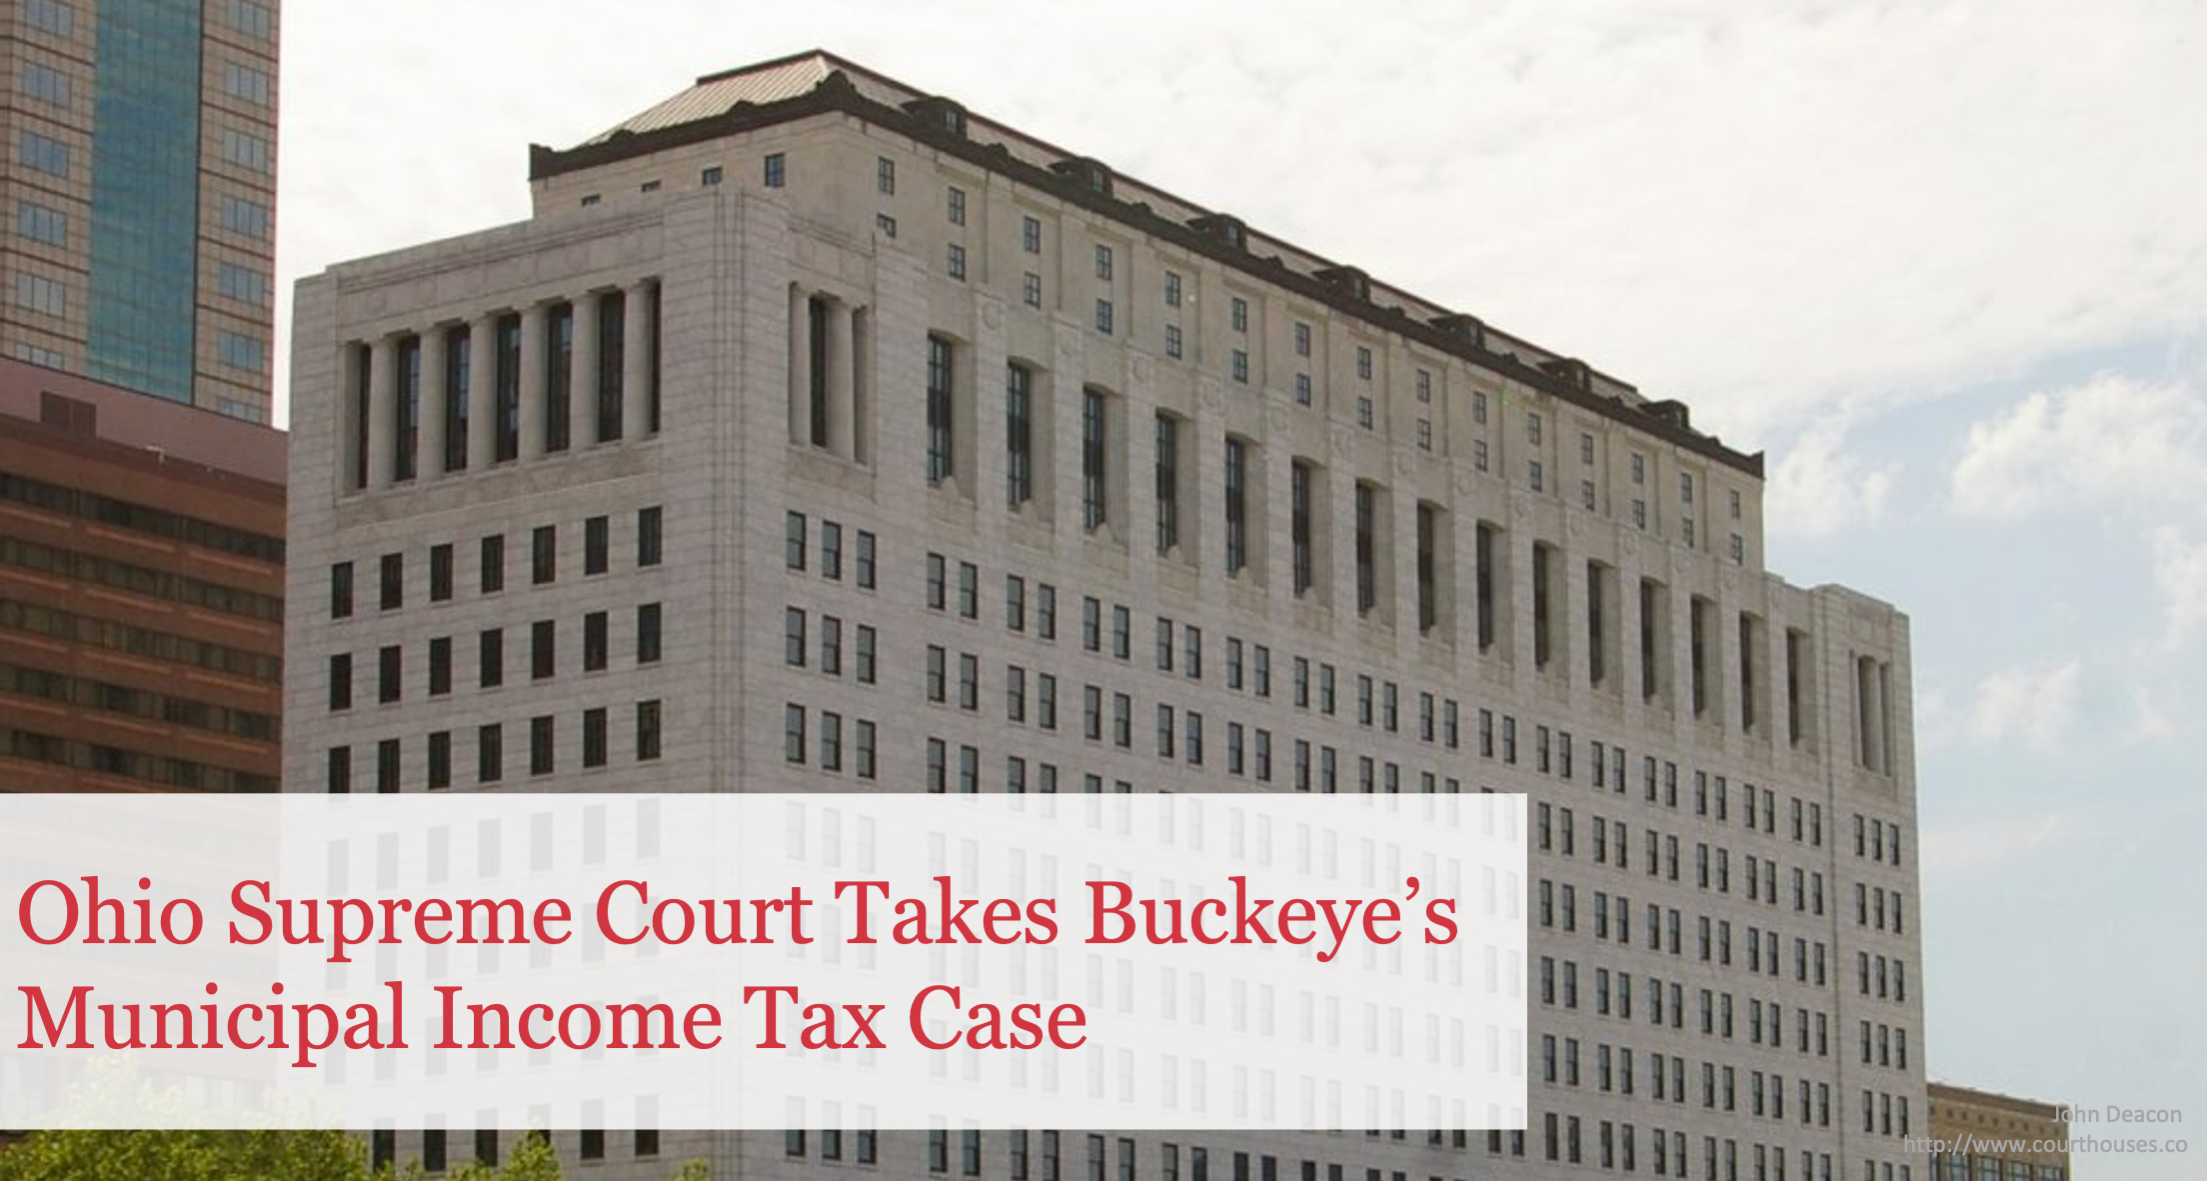 Ohio Supreme Court Takes Buckeye’s Municipal Income Tax Case